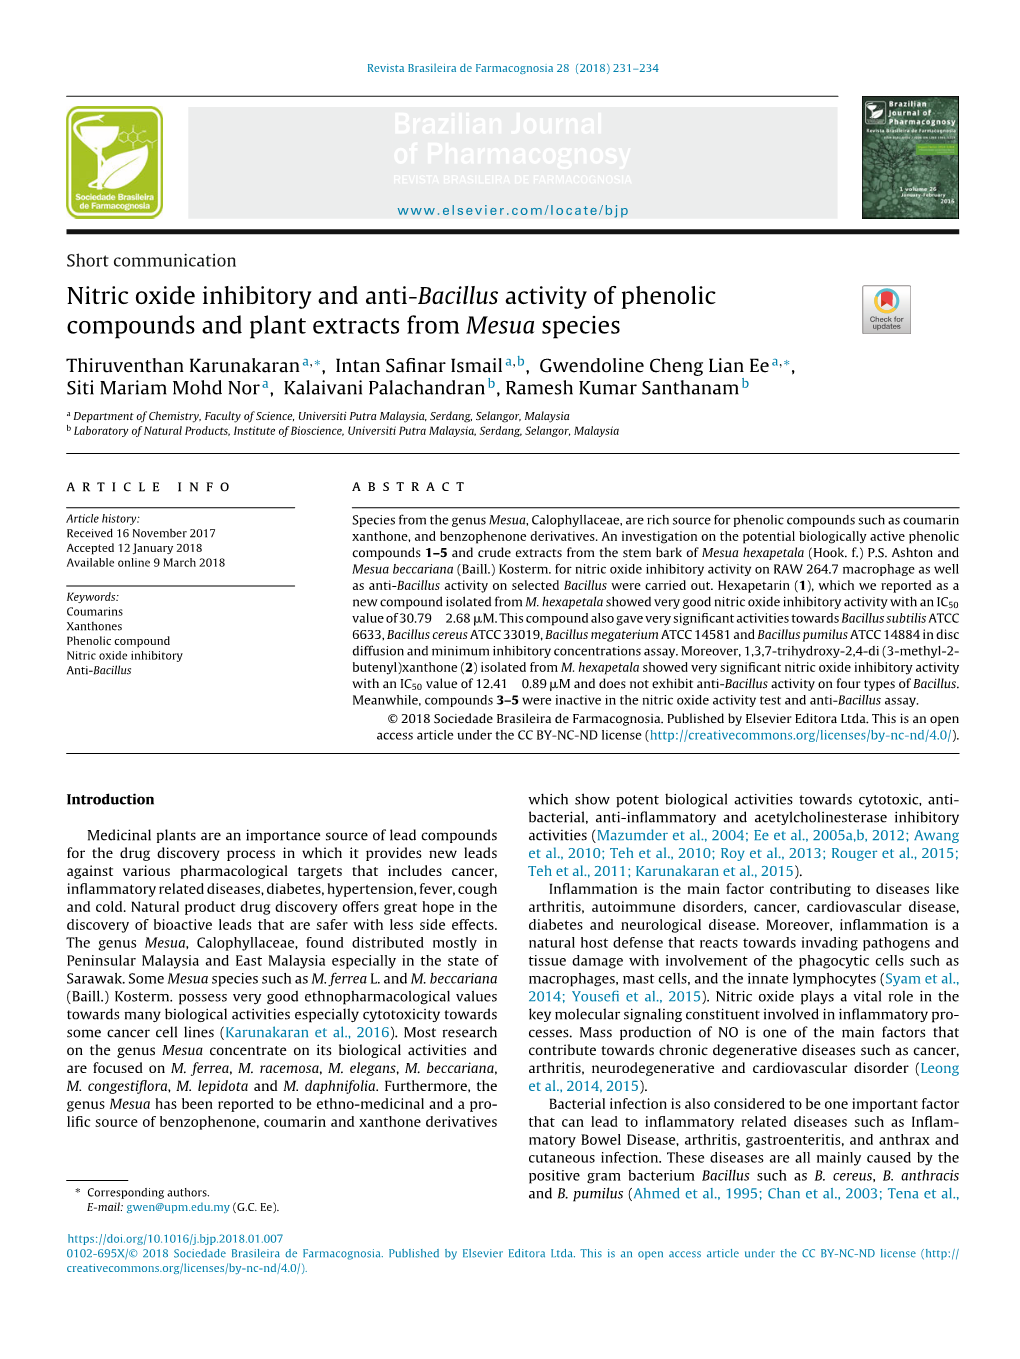 Nitric Oxide Inhibitory and Anti-Bacillus Activity of Phenolic